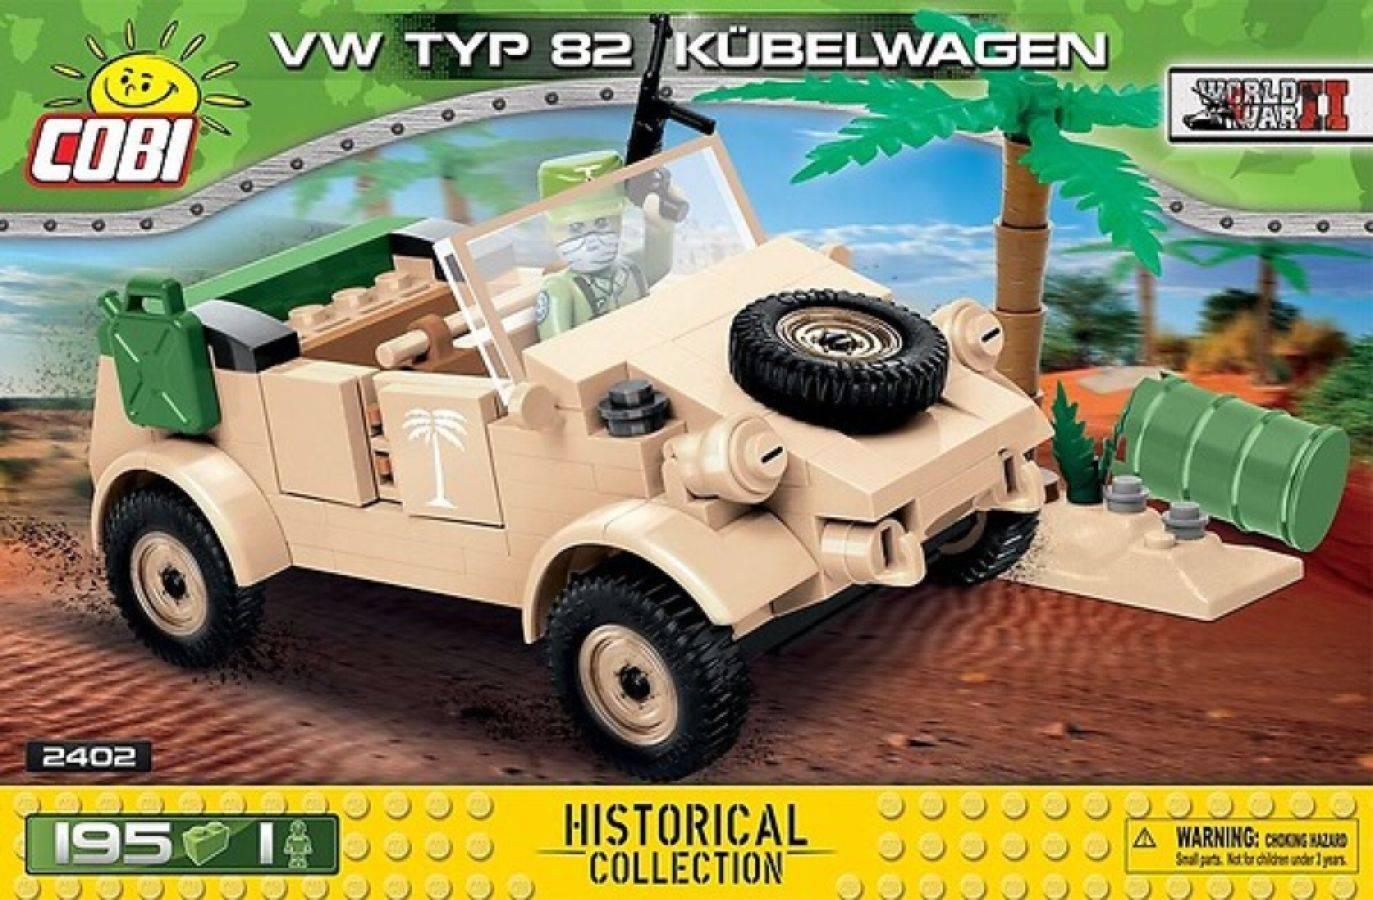 COB2402 World War II - VW Typ 82 Kubelwagen 195 pieces - Cobi - Titan Pop Culture